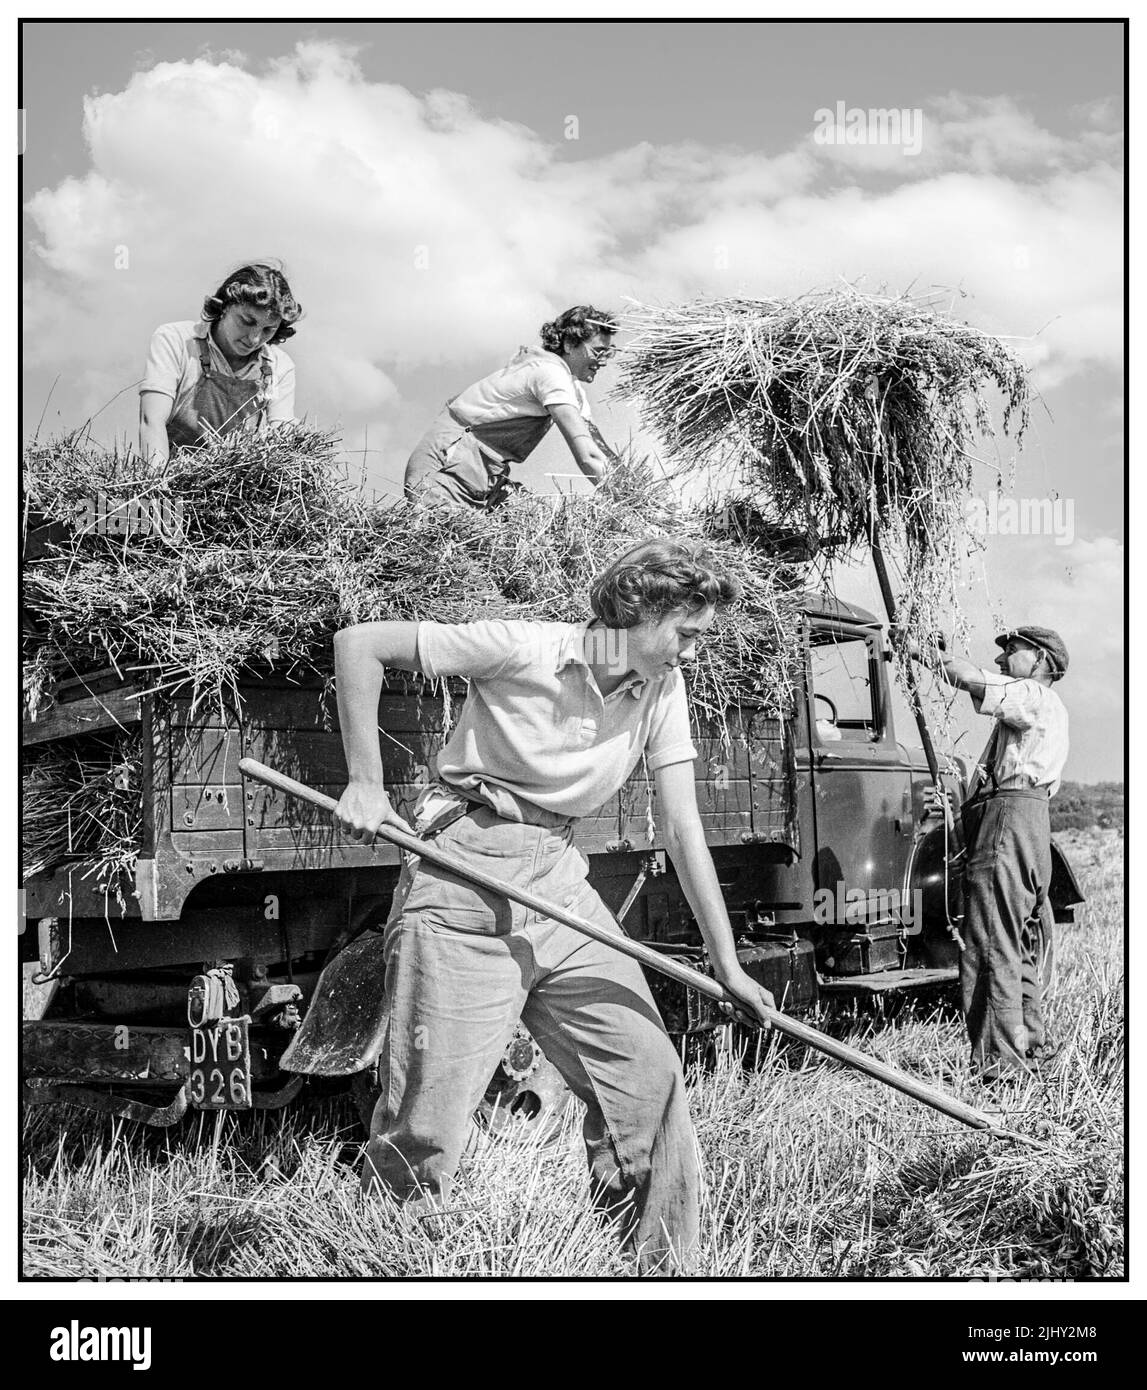 WW2 MUJERES EJÉRCITO DE TIERRA Reino Unido Producción de alimentos Cosecha en Mount Barton, Devon, Inglaterra, 1940s Las niñas de la tierra ayudan a un agricultor a cargar la avena cosechada en un camión bajo el sol en Hollow Moor, Devon.1942 ejército de la tierra de la mujer. El WLA trabajó en el suministro de alimentos durante la Segunda Guerra Mundial Foto de stock